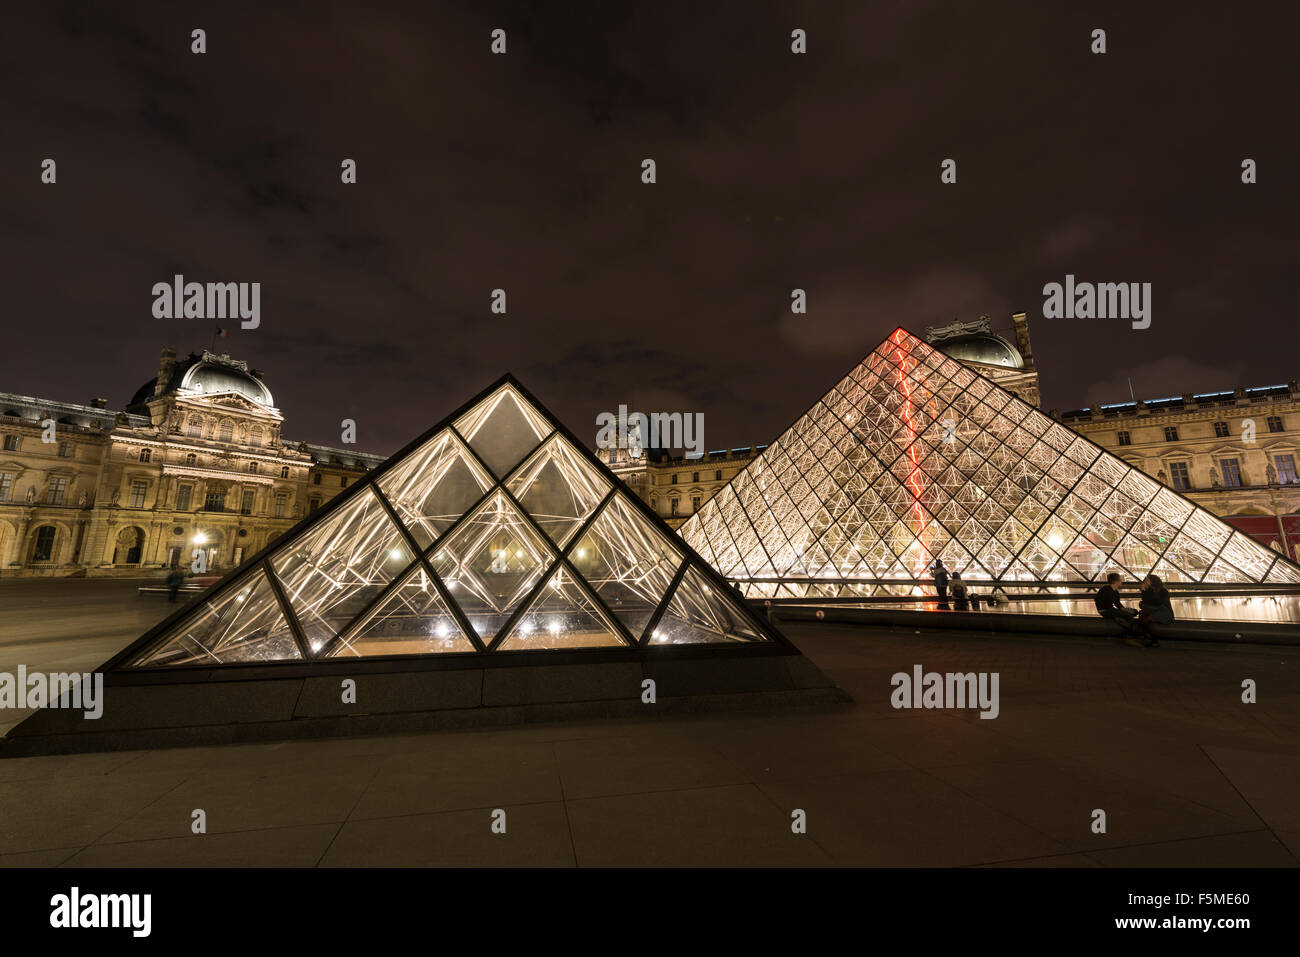 Pavillion Richelieu, pyramide de verre entrée, Palais du Louvre, nuit, Paris, Ile-de-France, France Banque D'Images